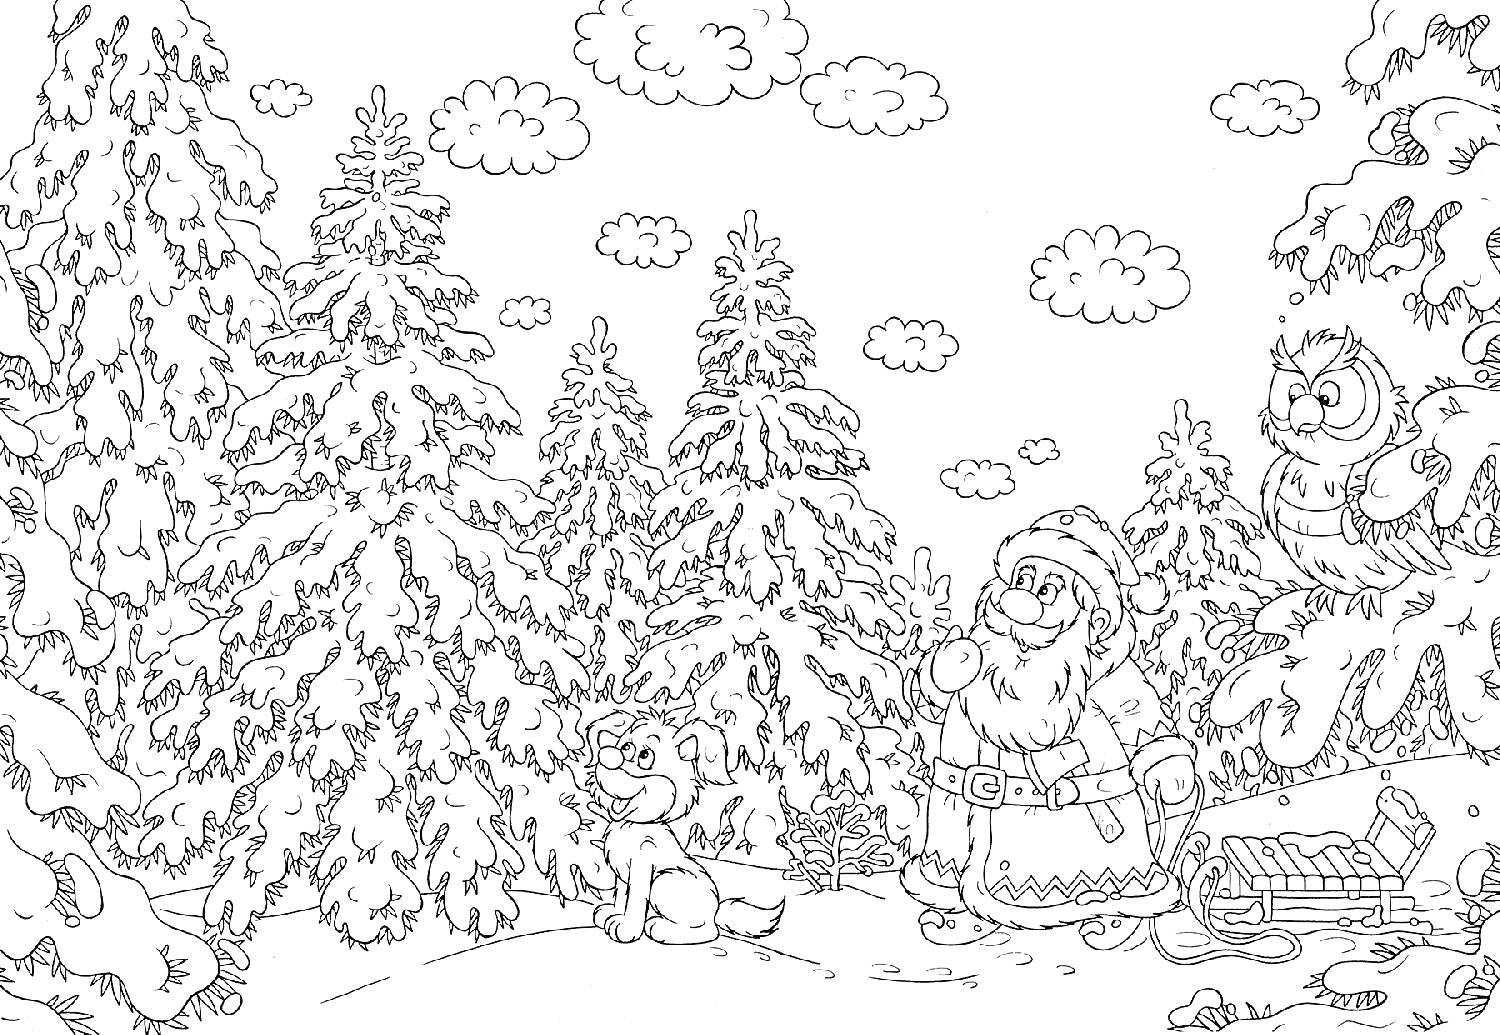 Раскраска Дед Мороз в зимнем лесу с белкой, лягушкой и совой.